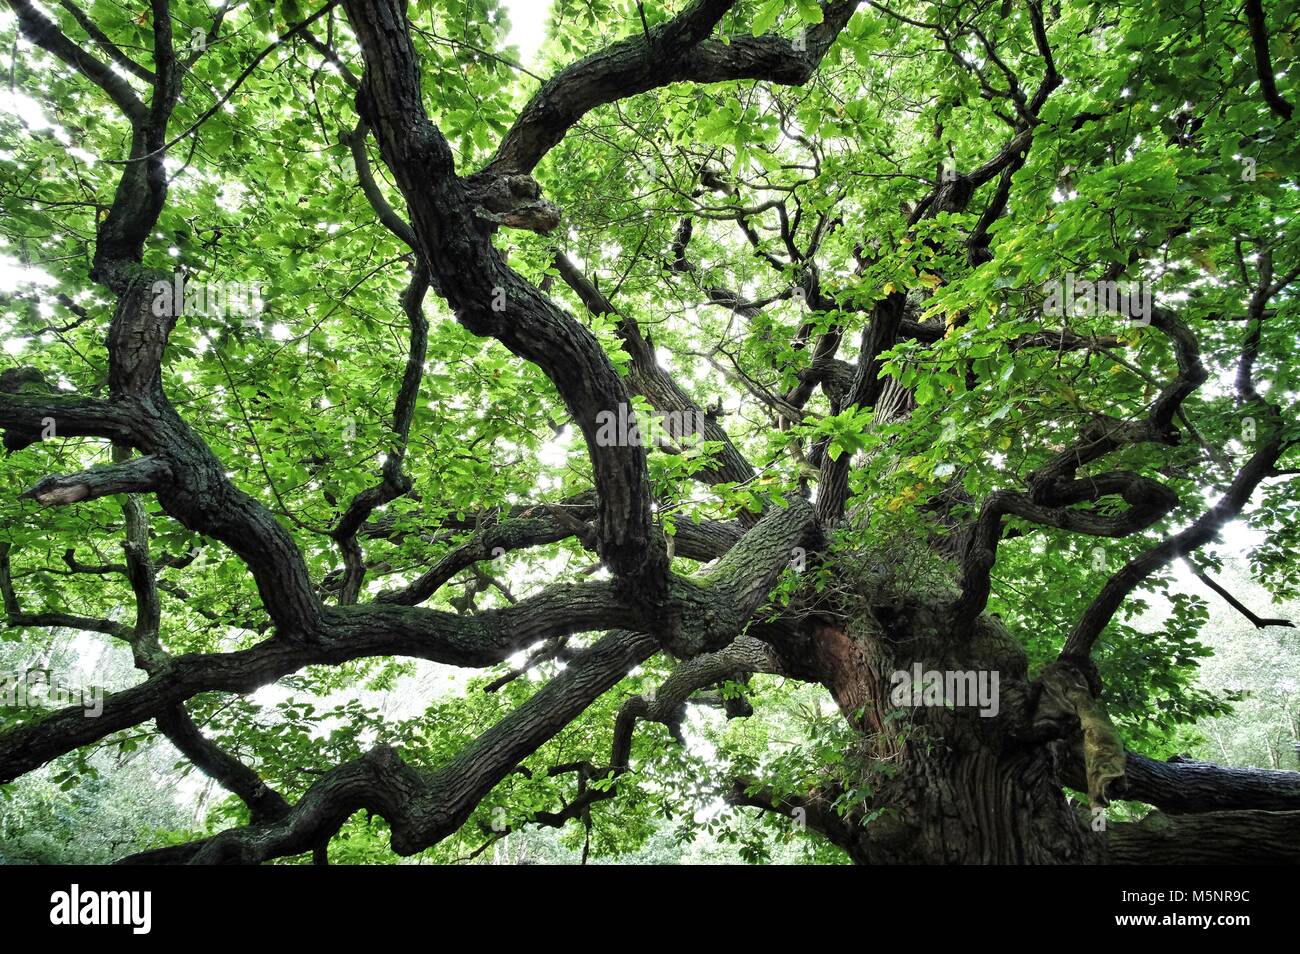 Árboles de roble del Bosque de Sherwood, ambos muy jóvenes y viejos. Foto de stock